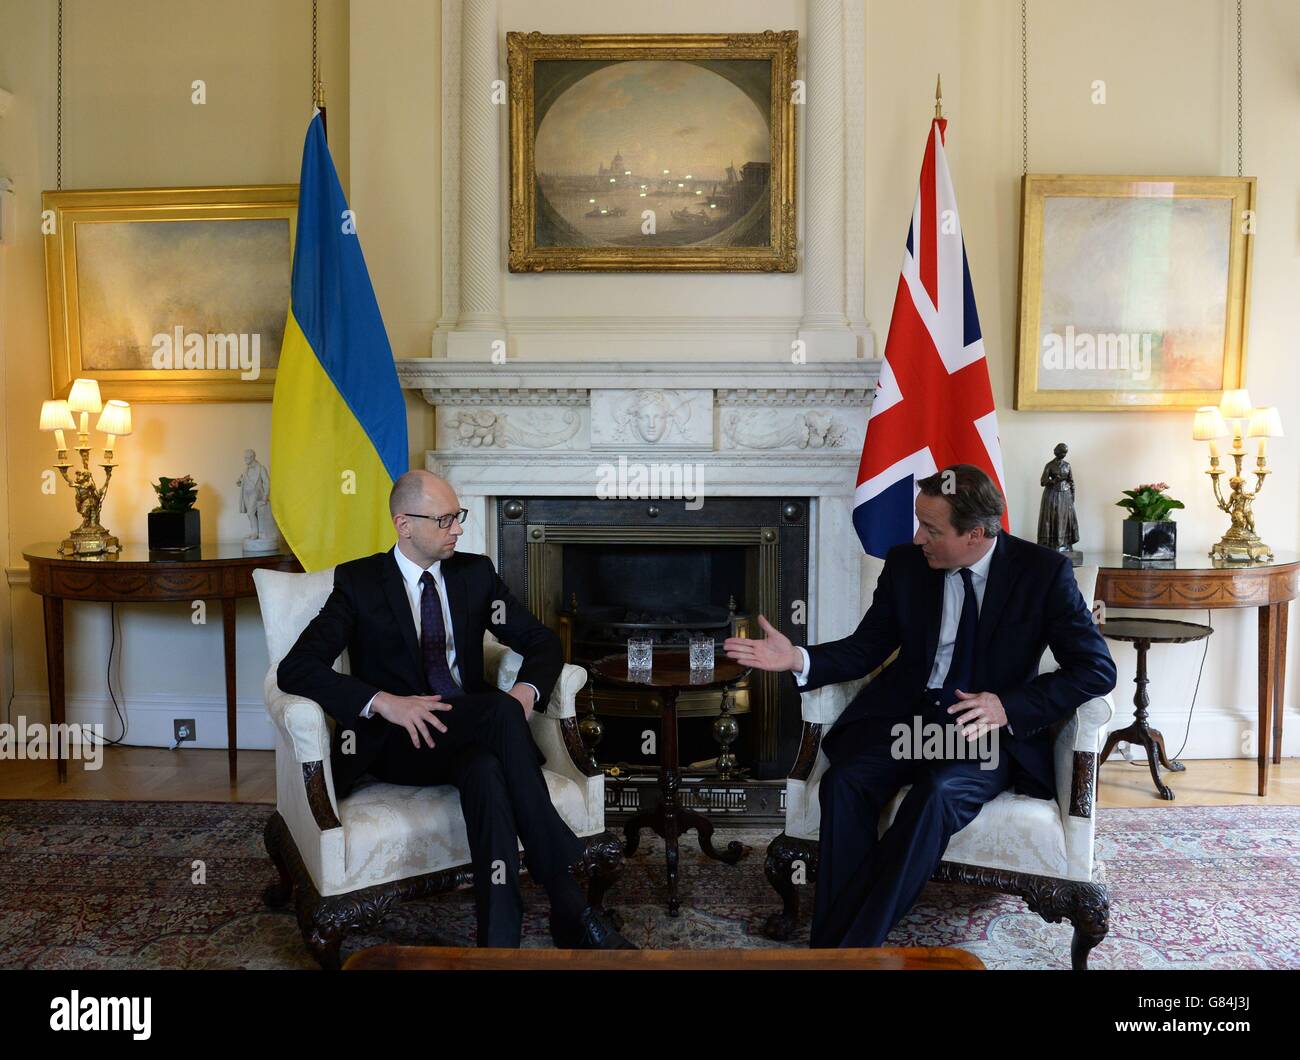 Le Premier ministre David Cameron rencontre son homologue ukrainien Arseniy Yatseniuk pour des entretiens au 10 Downing Street, dans le centre de Londres. Banque D'Images